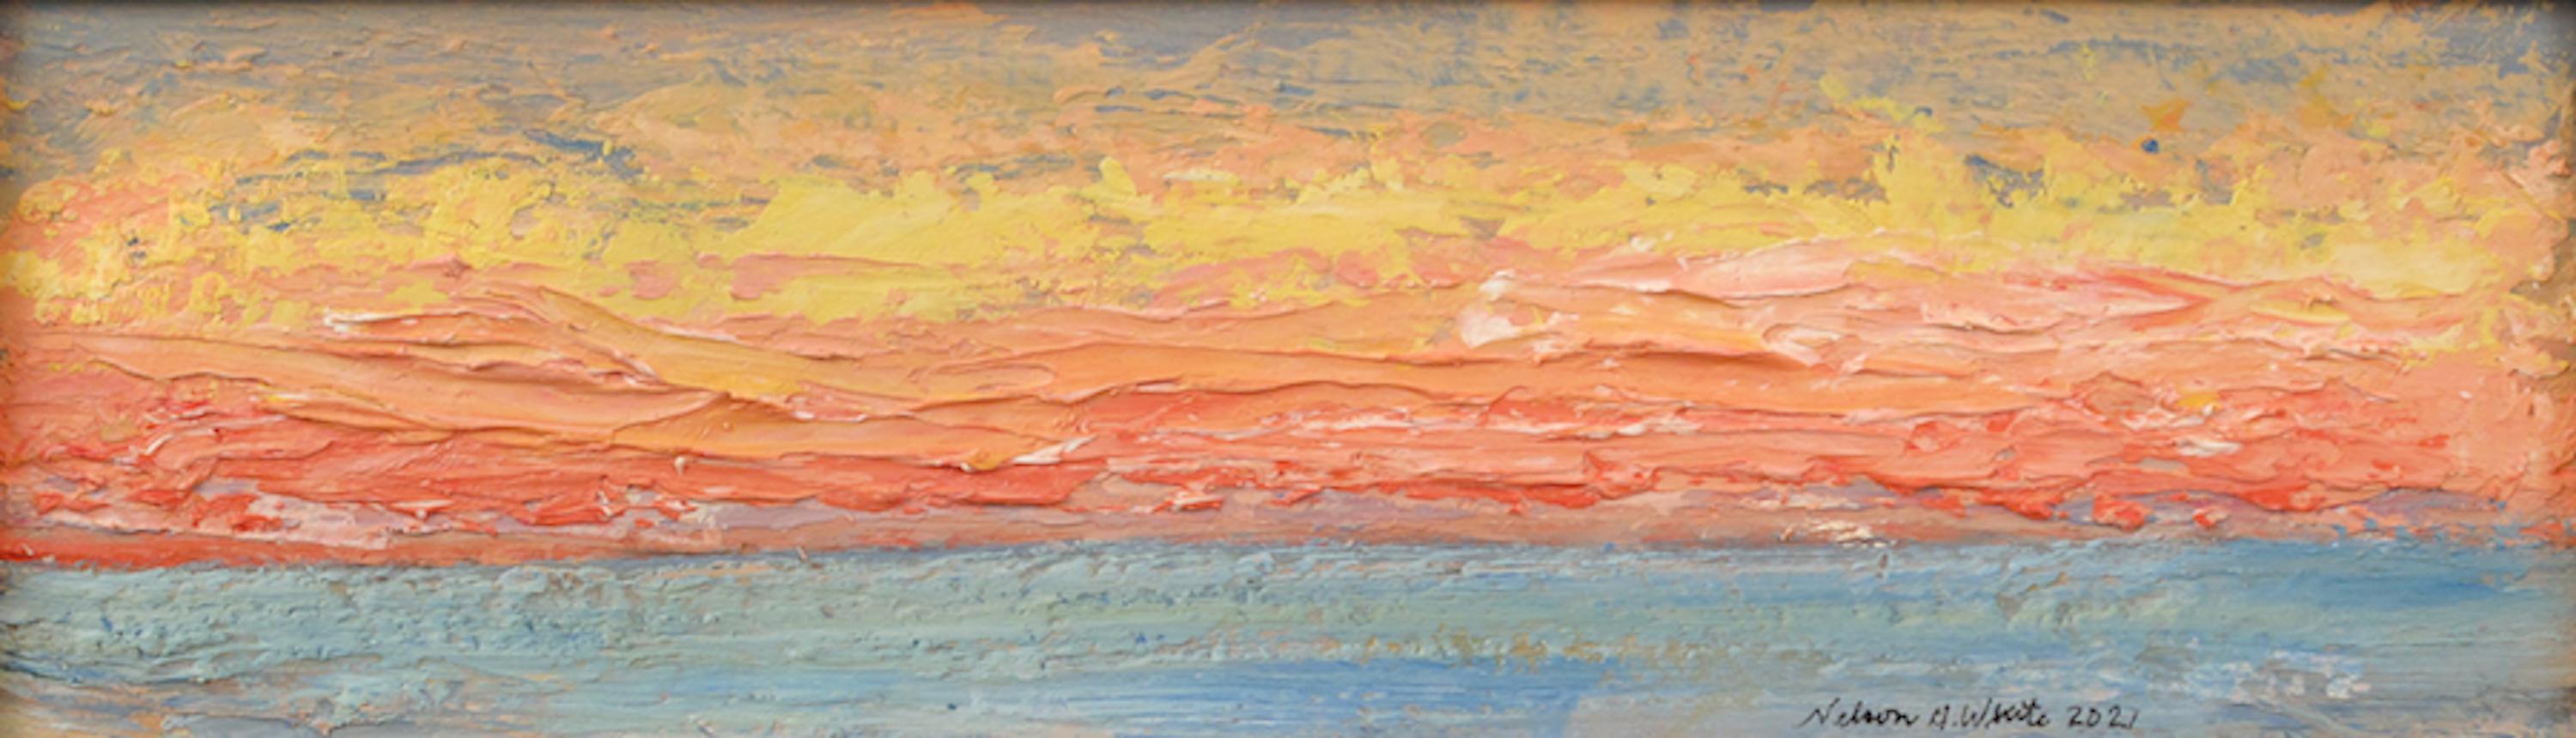 Landscape Painting Nelson White - Coucher de soleil mer et ciel 02.21.2021